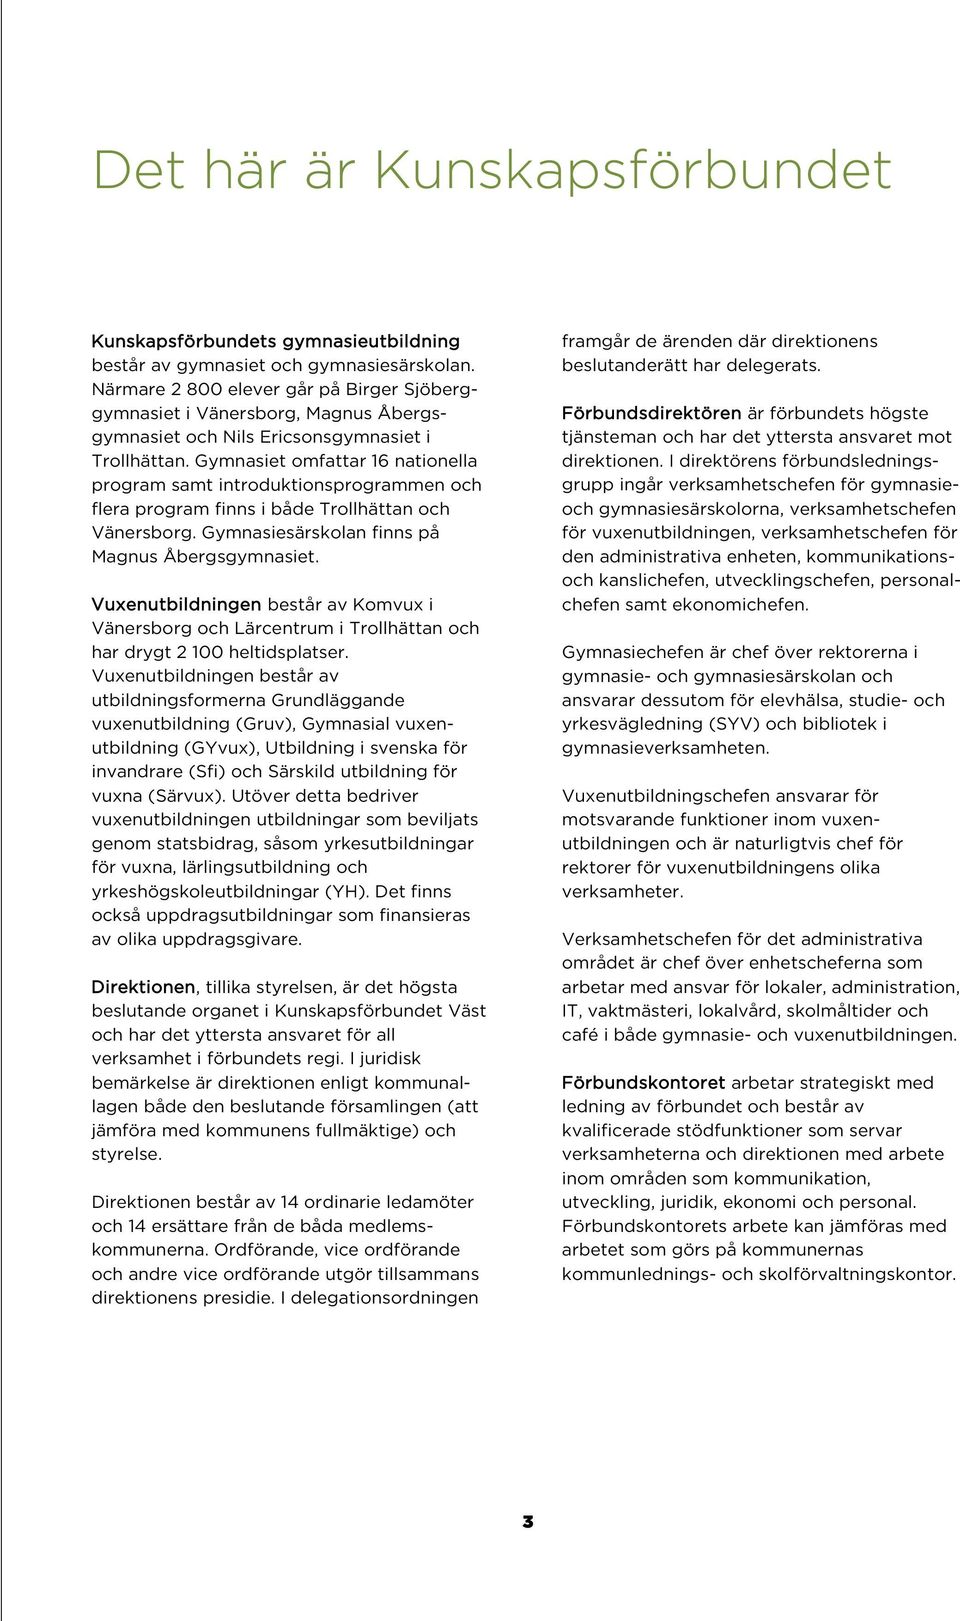 KUNSKAPSFÖRBUNDET VÄST. Delårsrapport - PDF Free Download